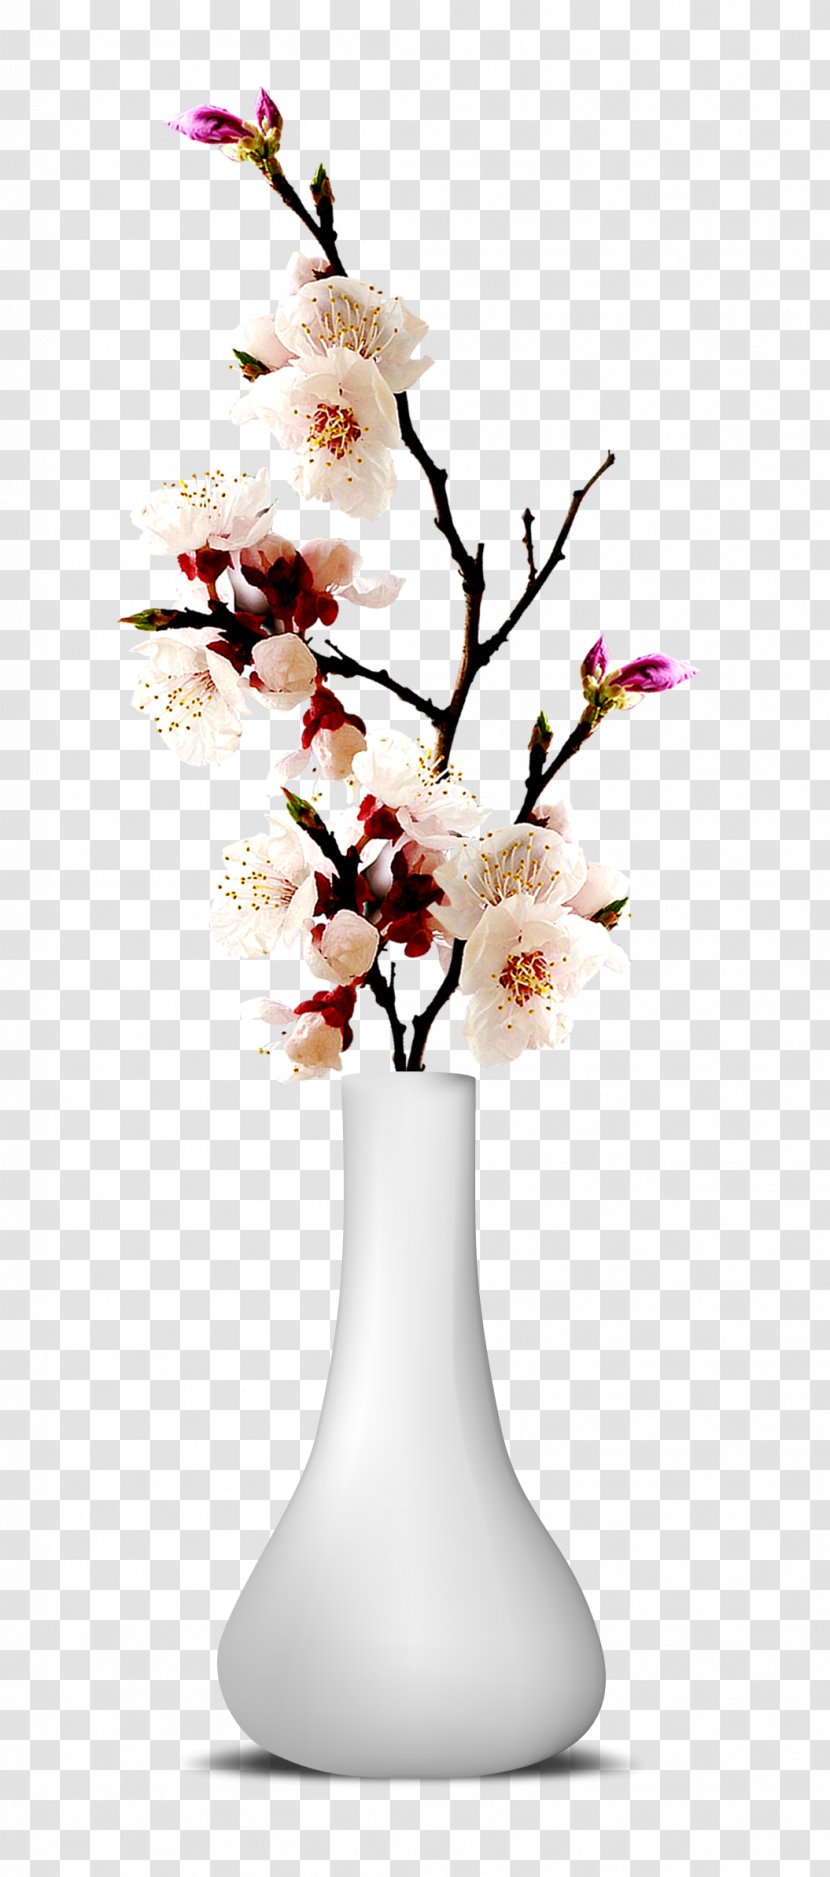 Flower Vase - Ornament - Cut Flowers Transparent PNG